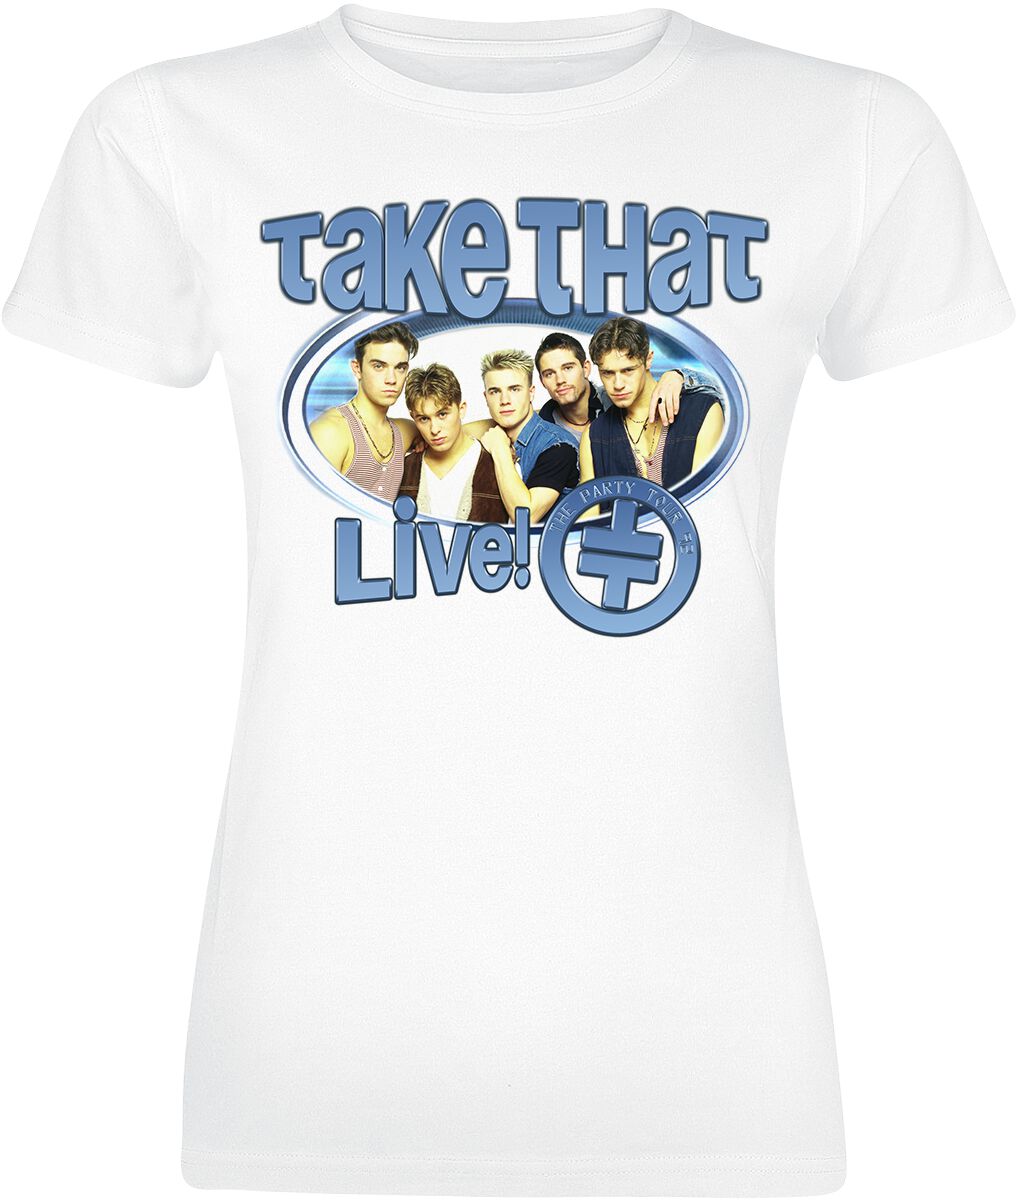 Take That T-Shirt - The Party Tour - S bis M - für Damen - Größe M - weiß  - Lizenziertes Merchandise!